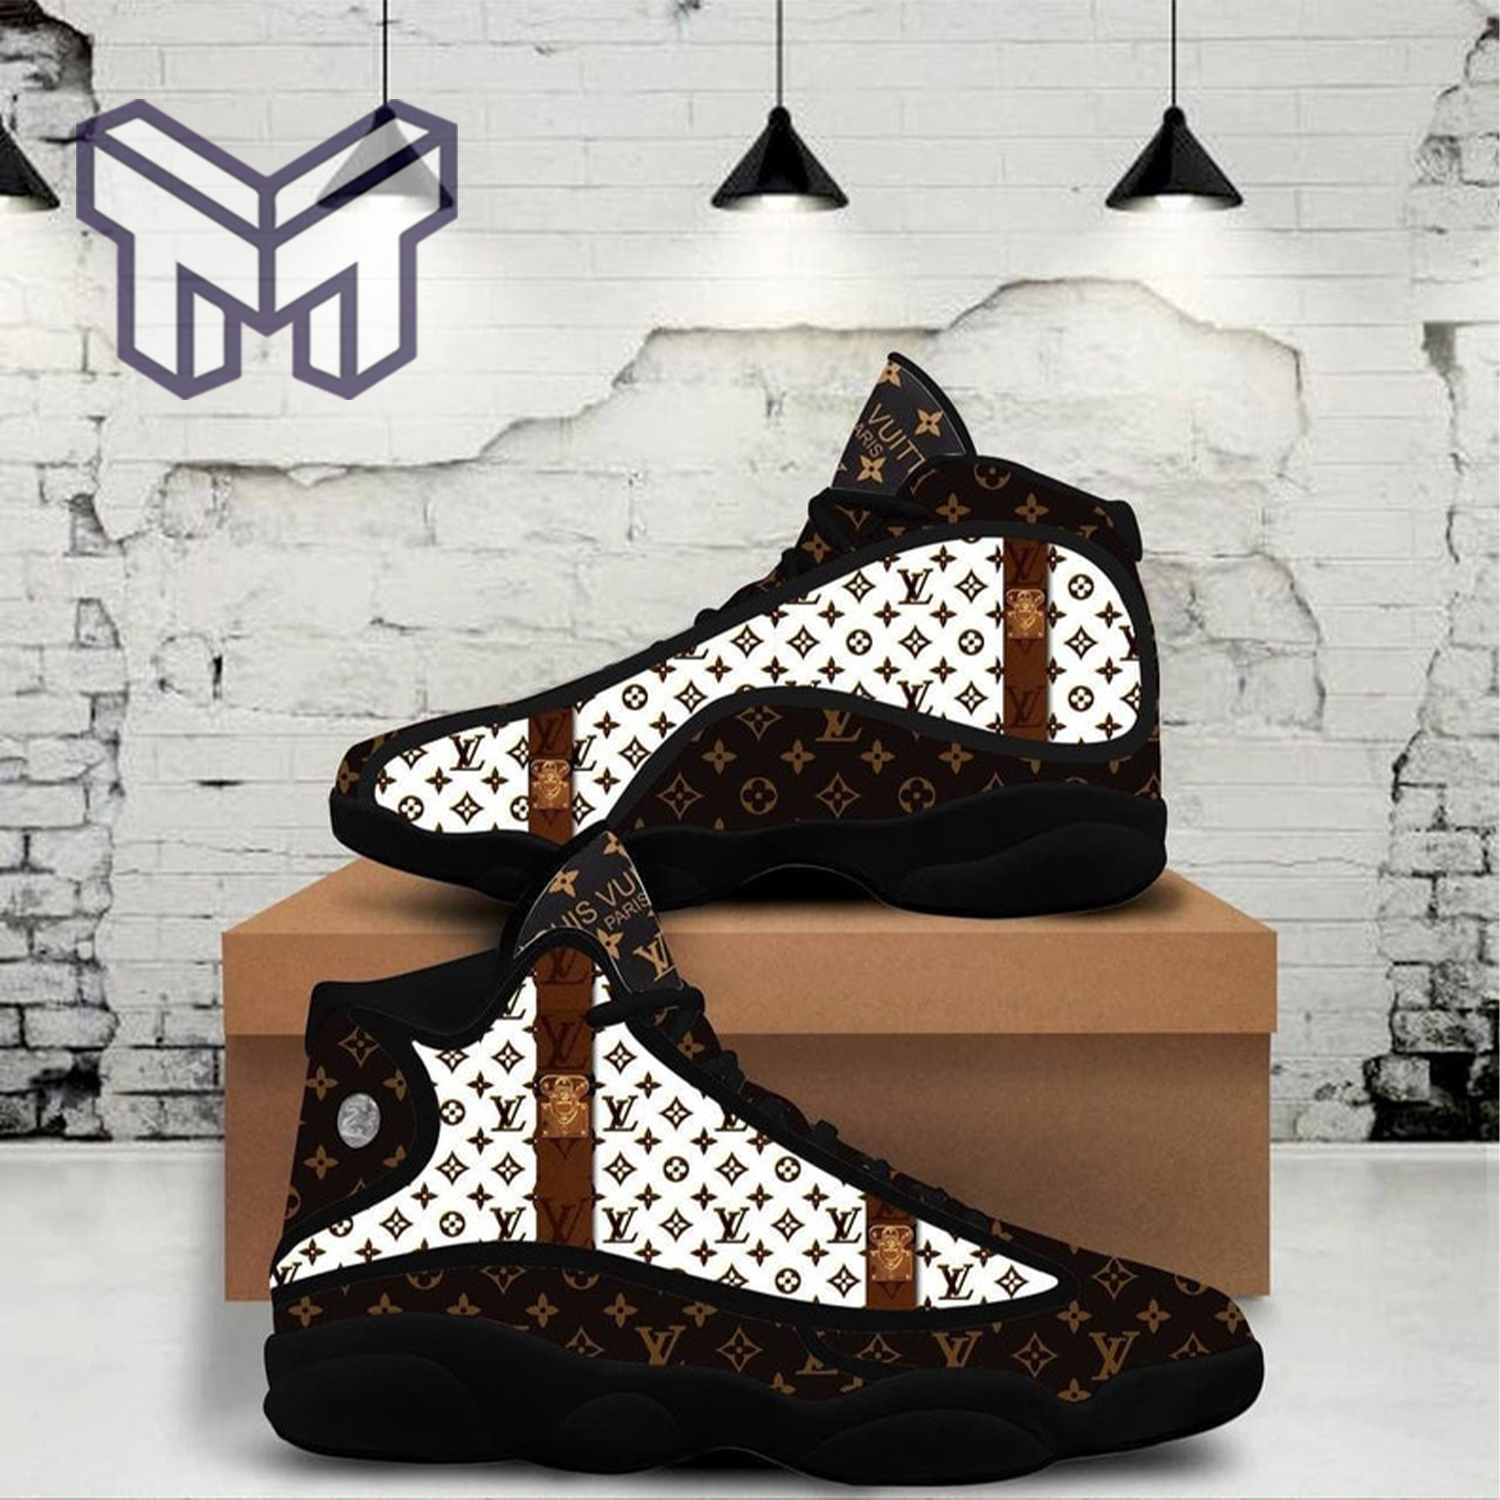 Louis Vuitton Brown Air Jordan 13 Sneakers Shoes - Muranotex Store